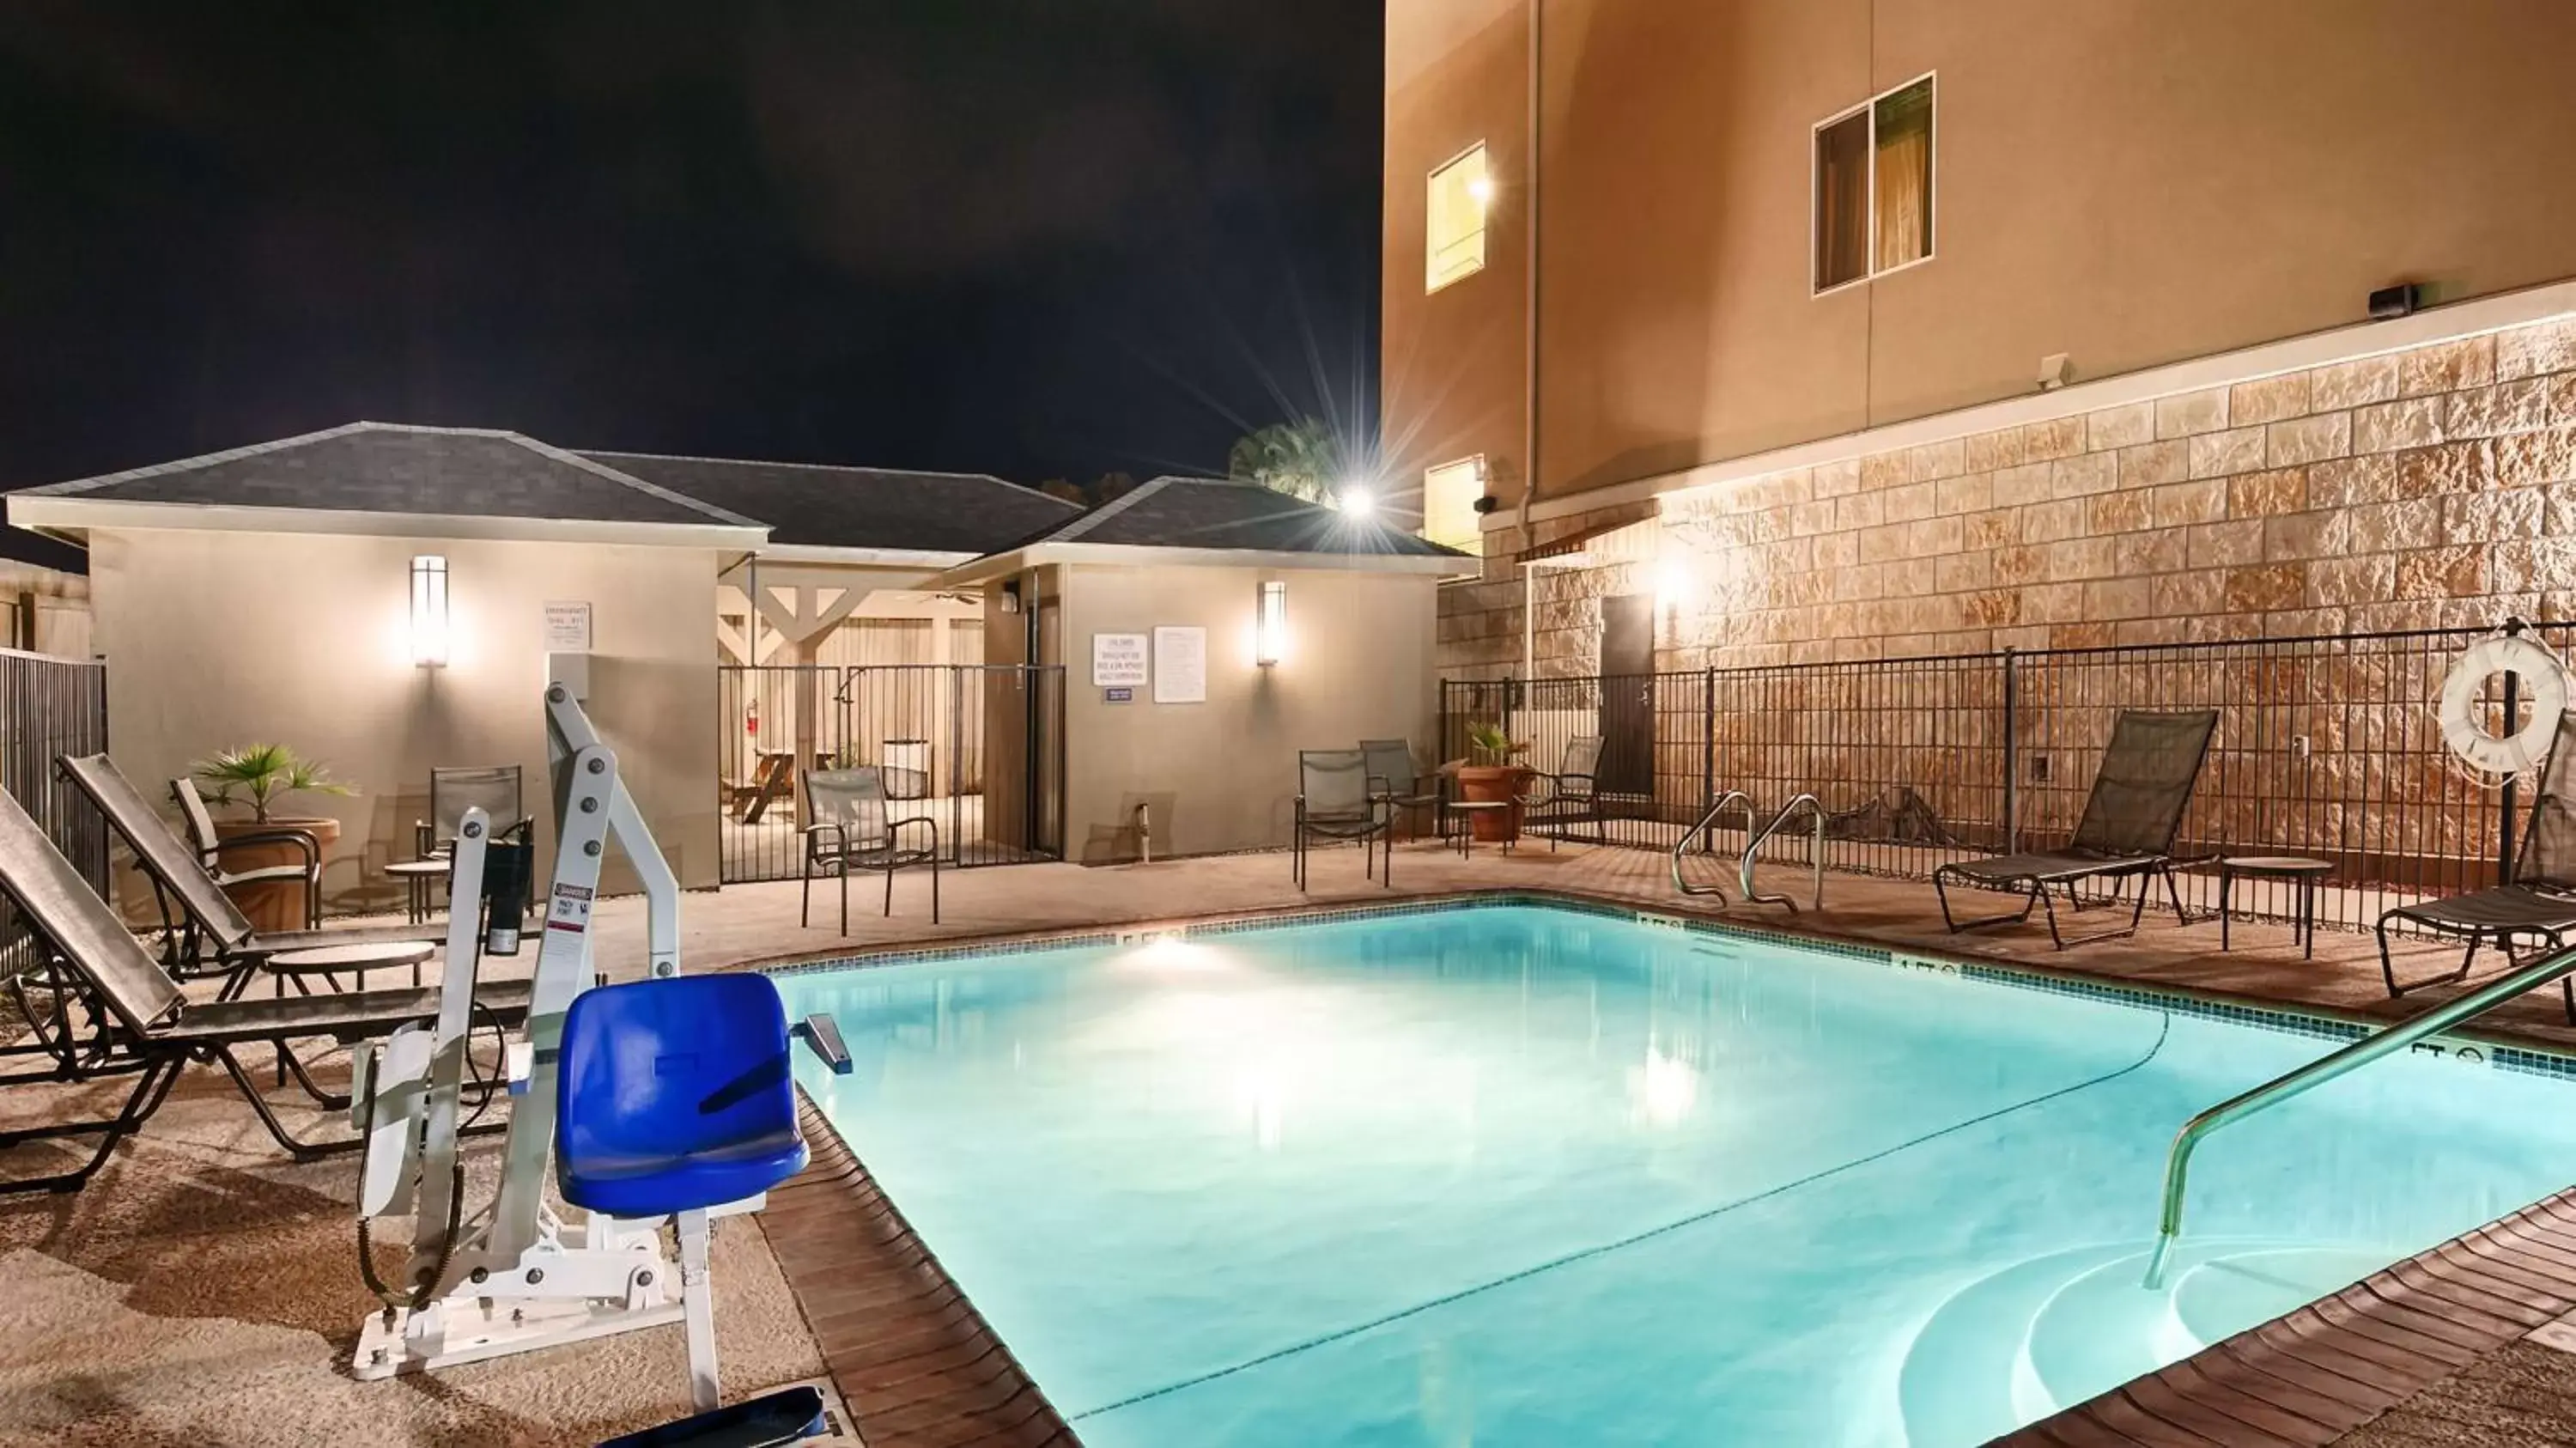 On site, Swimming Pool in Best Western Plus Carrizo Springs Inn & Suites